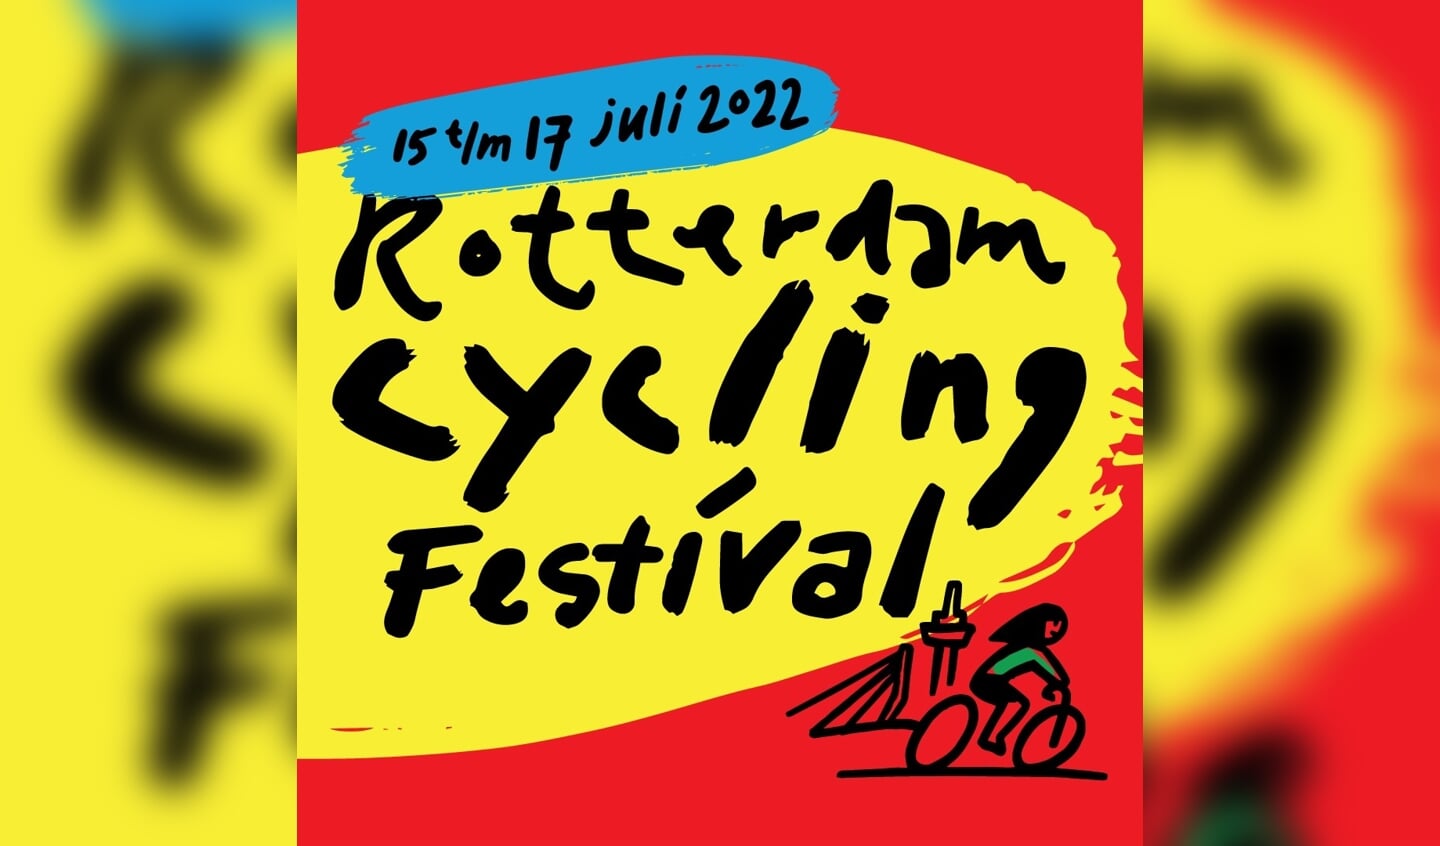 Het Rotterdam Cycling Festival is de opmaat naar de twee grote evenementen die de stad graag wil binnenhalen: de Grand Départ van de Tour de France en de komst van de nieuwe Tour voor vrouwen.